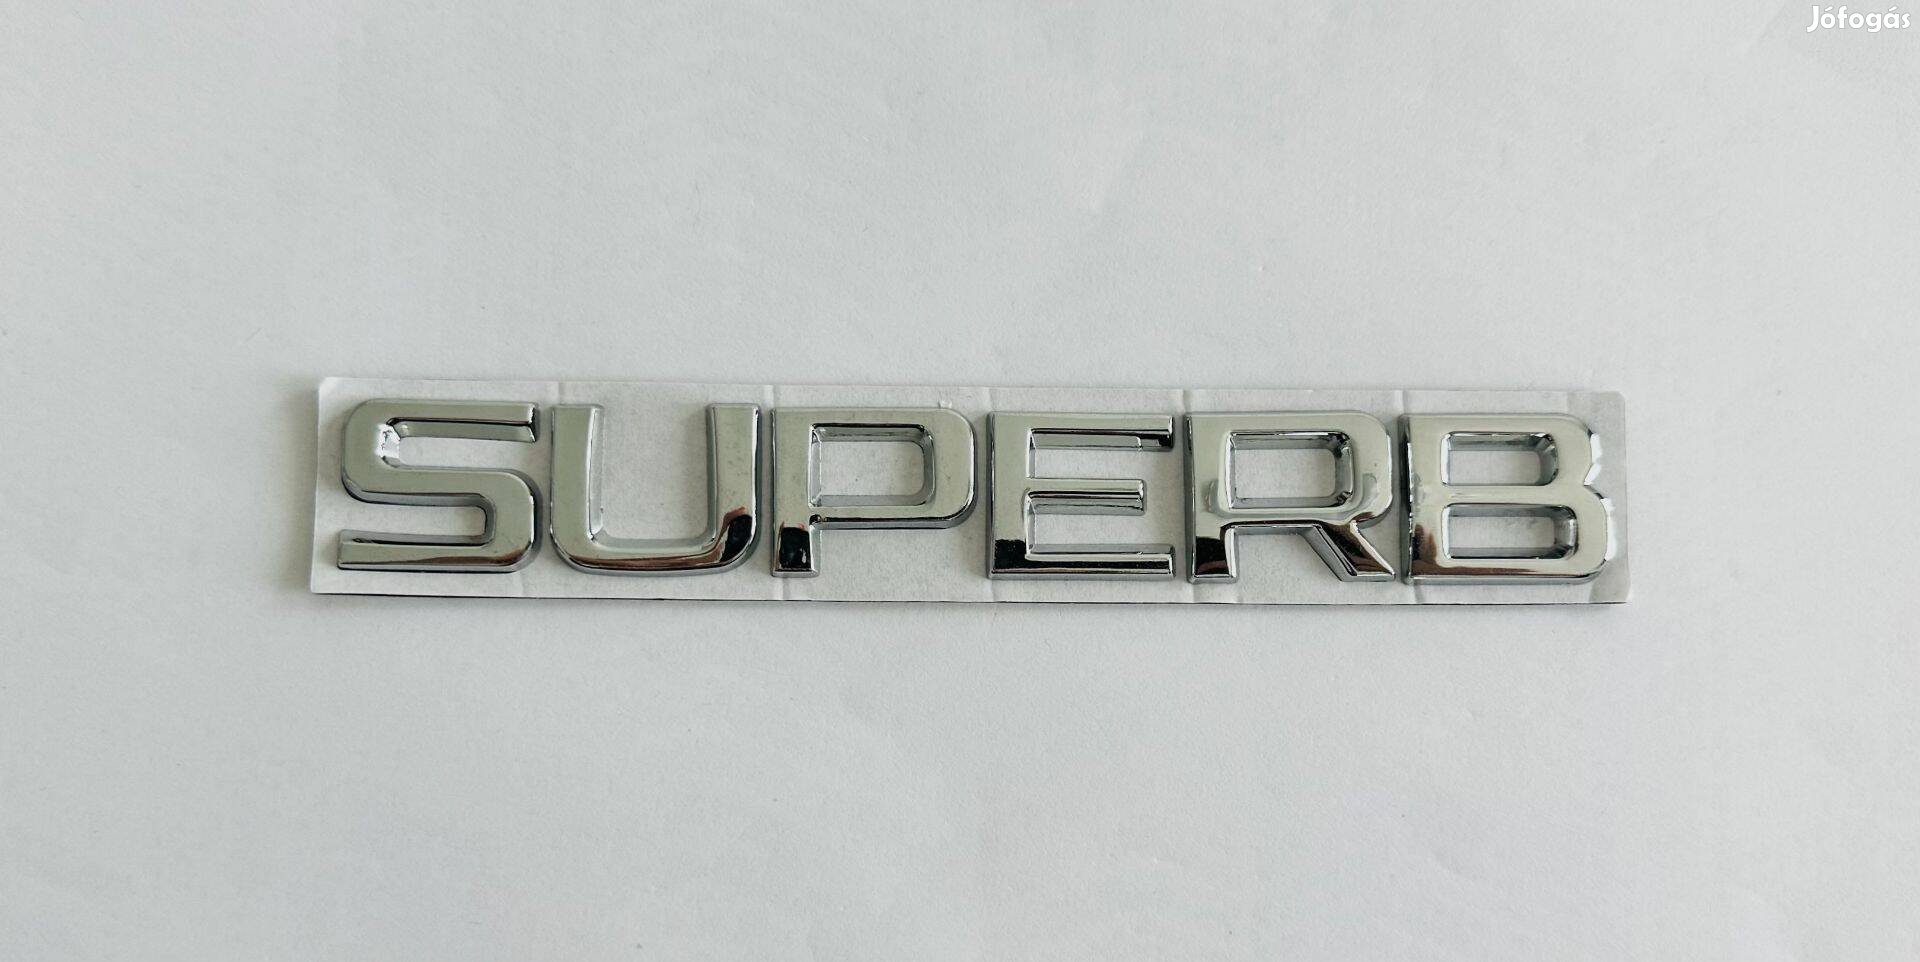 Új Skoda Superb felirat embléma jel logó kiegészítő gépház csomagtér